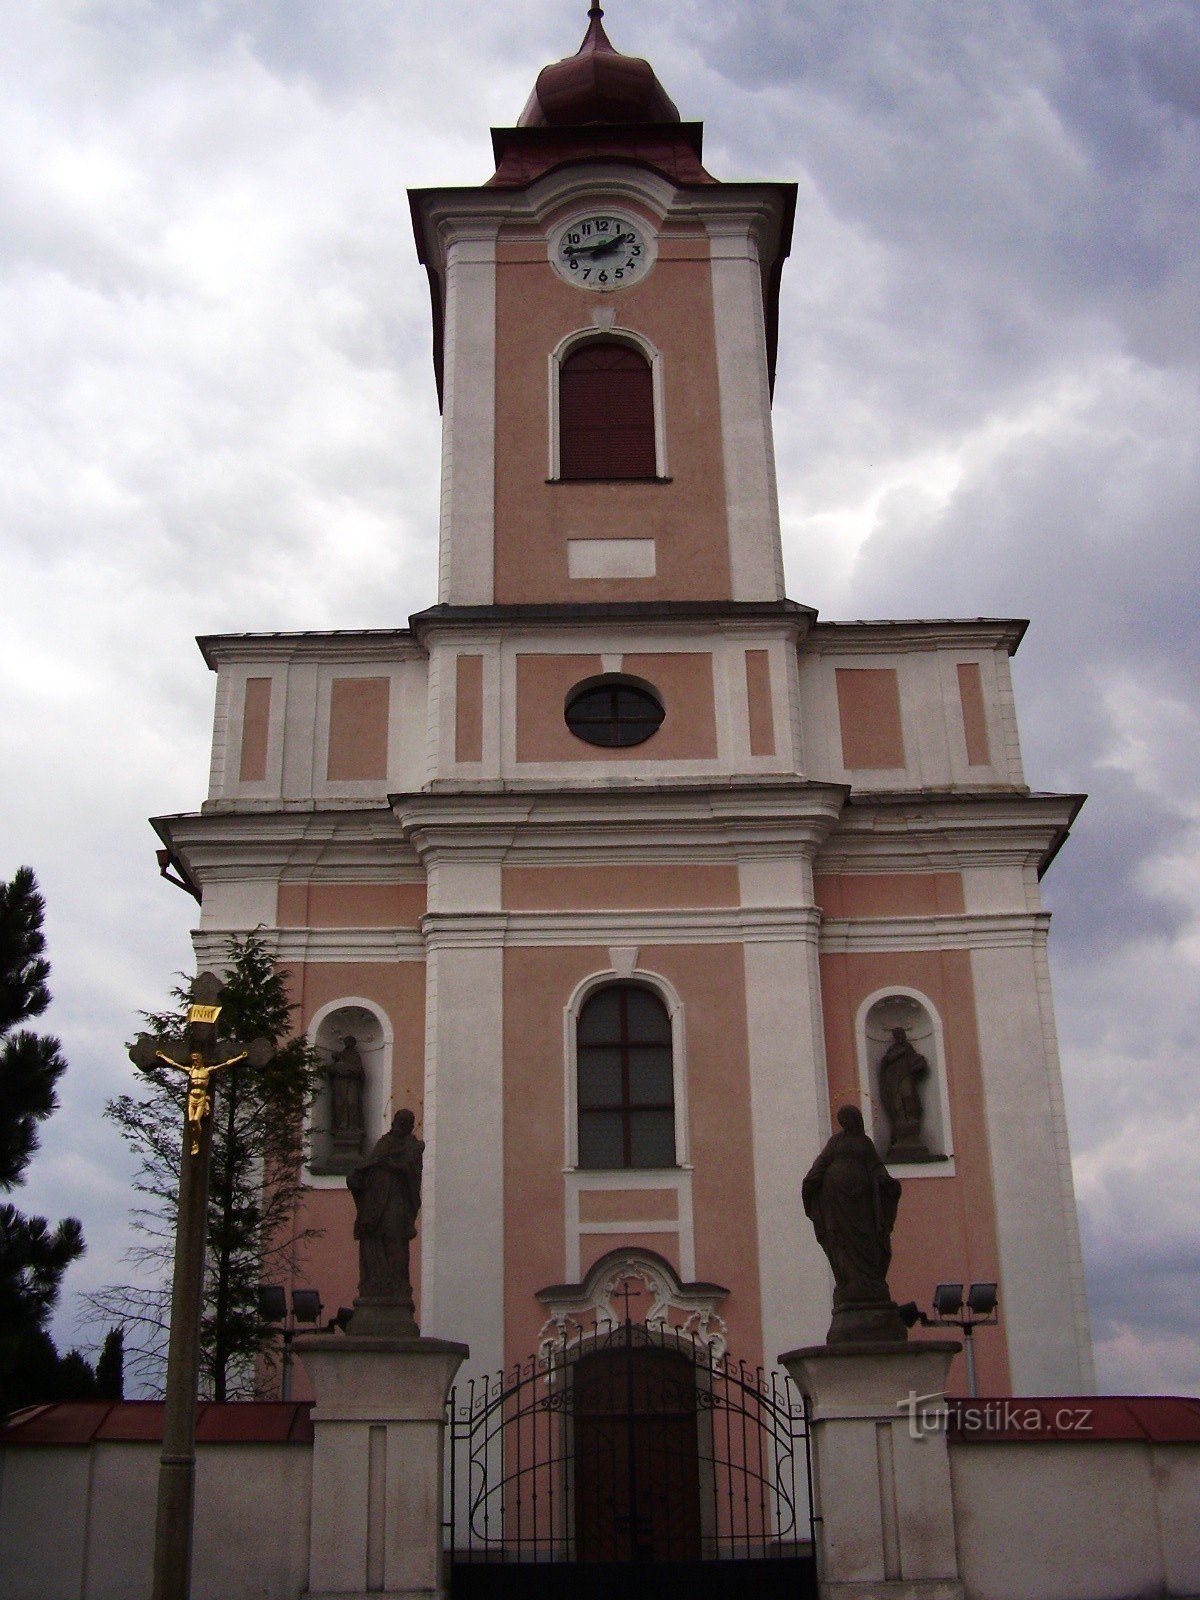 Nové Veselí - church and statues